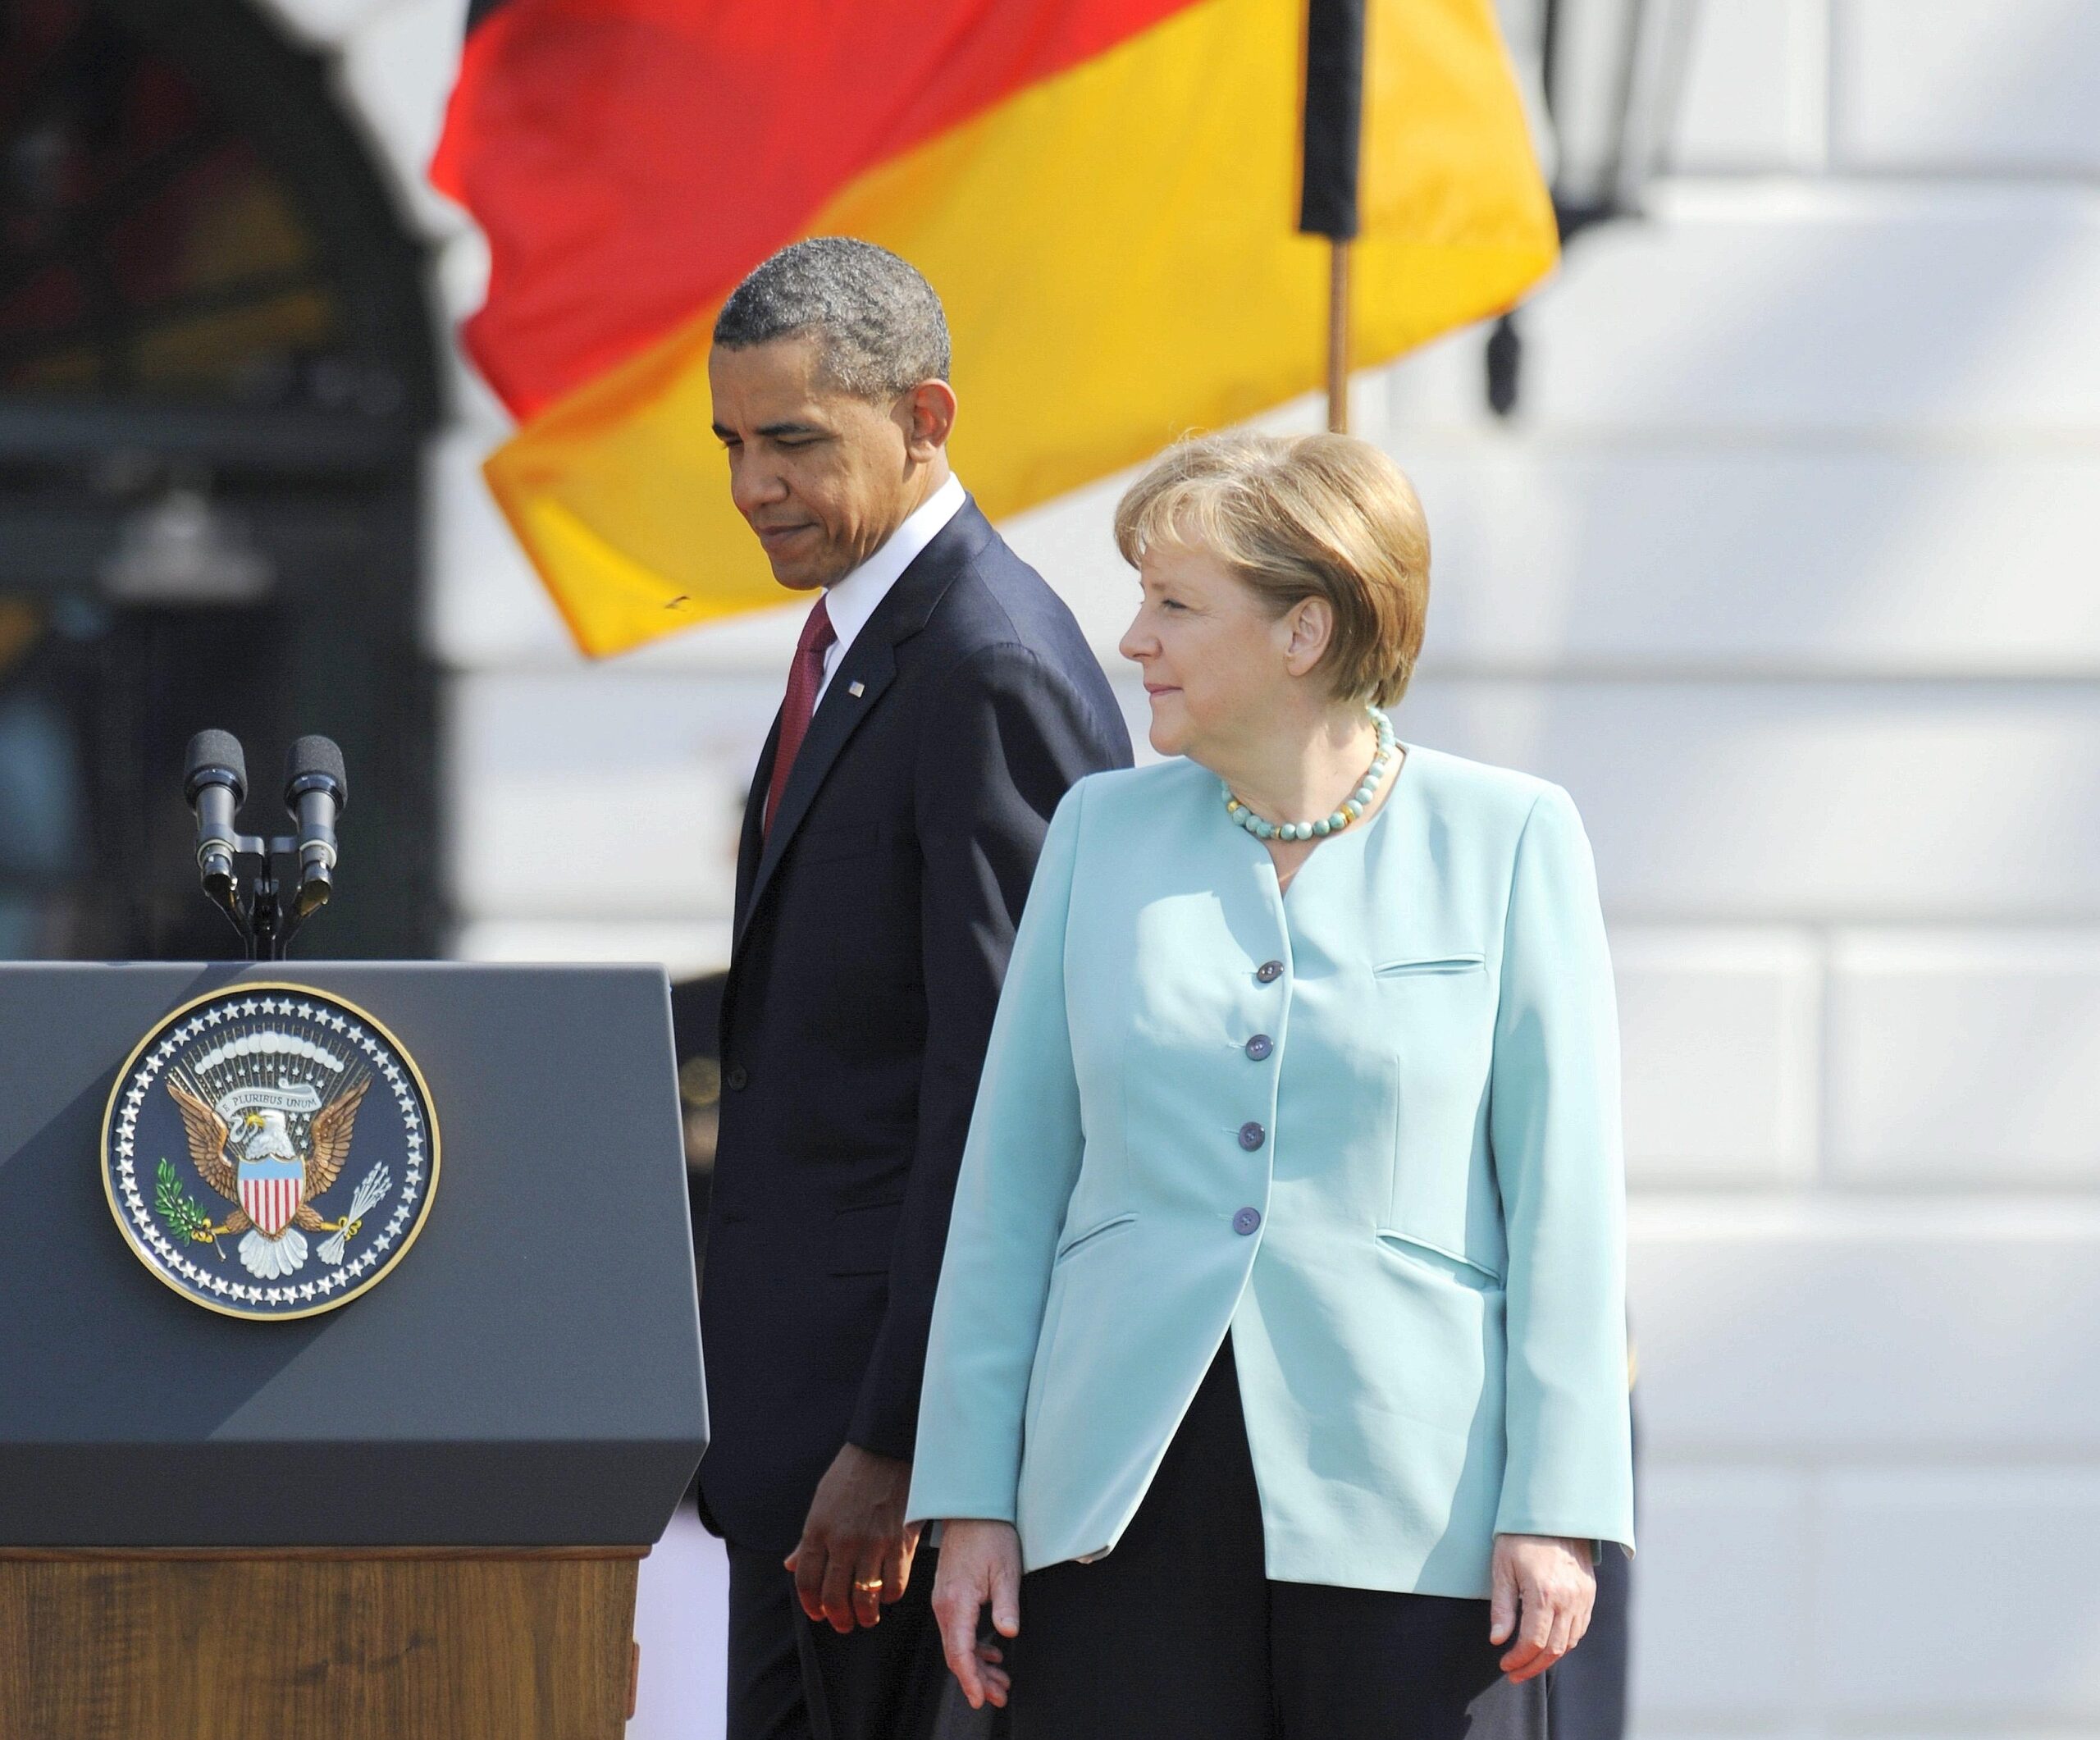 Die Geschichte Deutschlands zeige, was in der heutigen Zeit möglich sei, sagte Obama. Kriege könnten ...